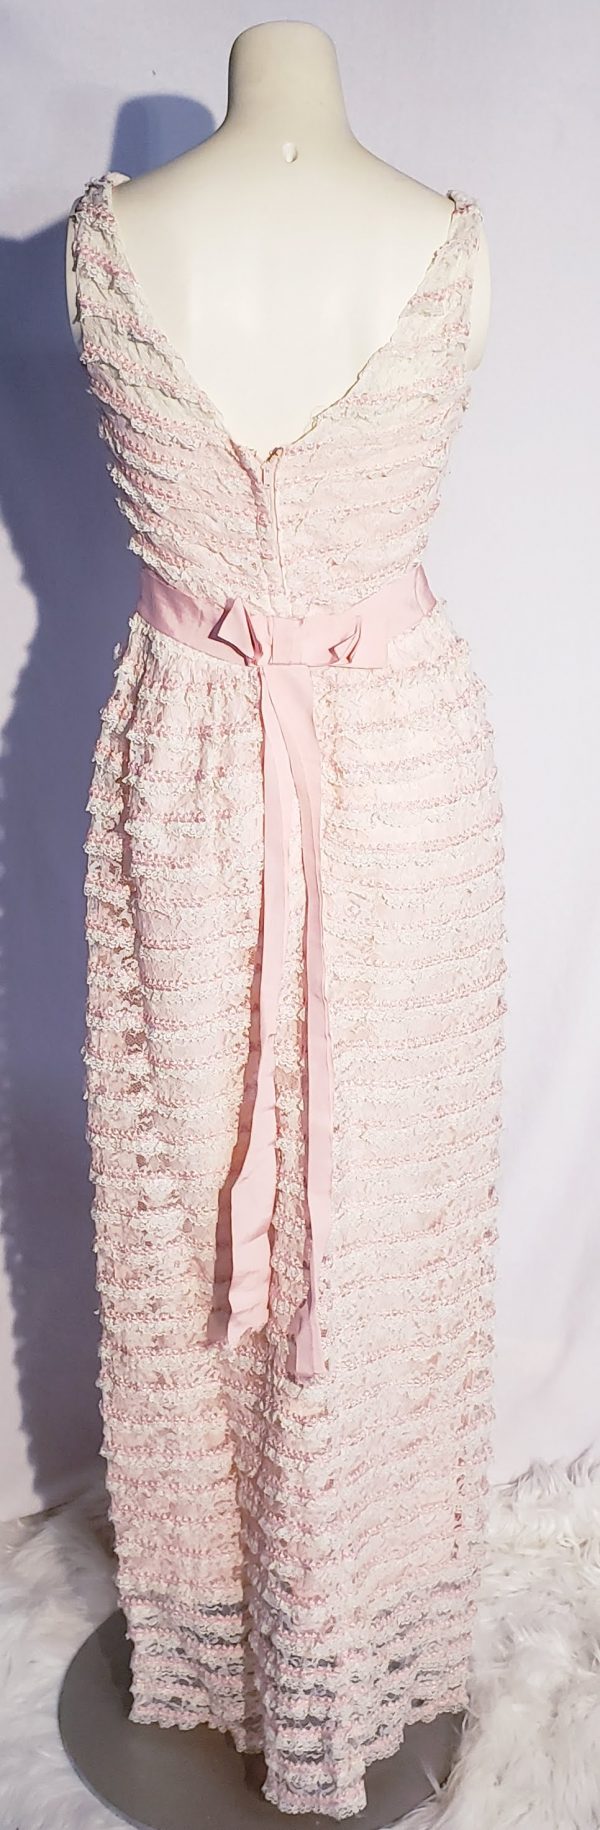 Pink and White Ruffle Dress